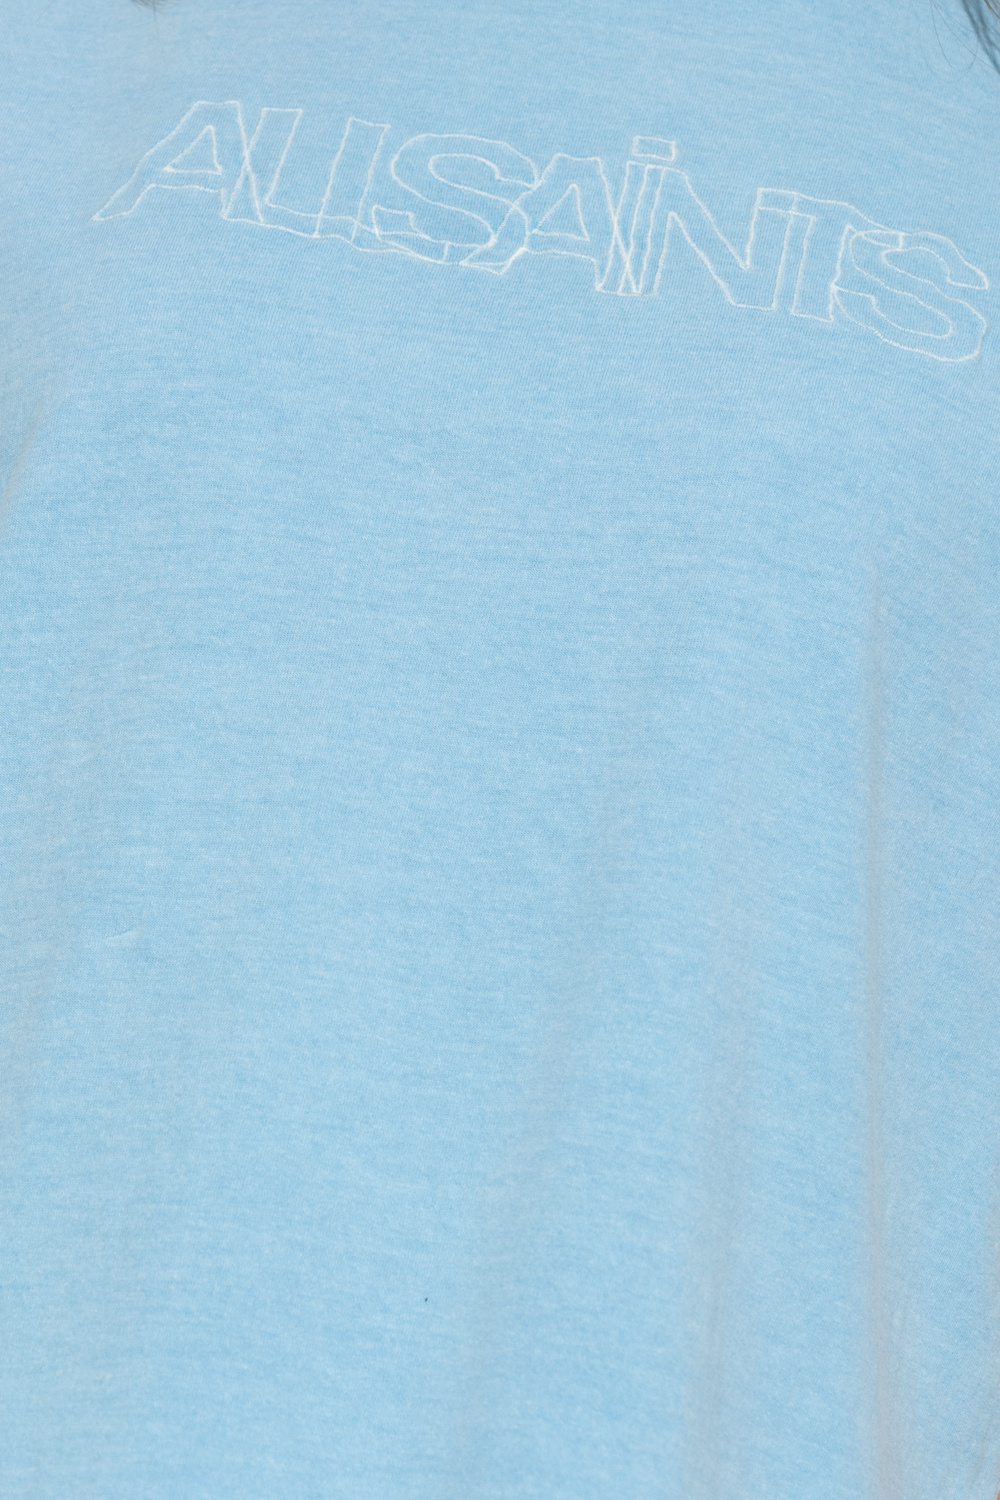 AllSaints ‘AllSaints Mic’ T-shirt